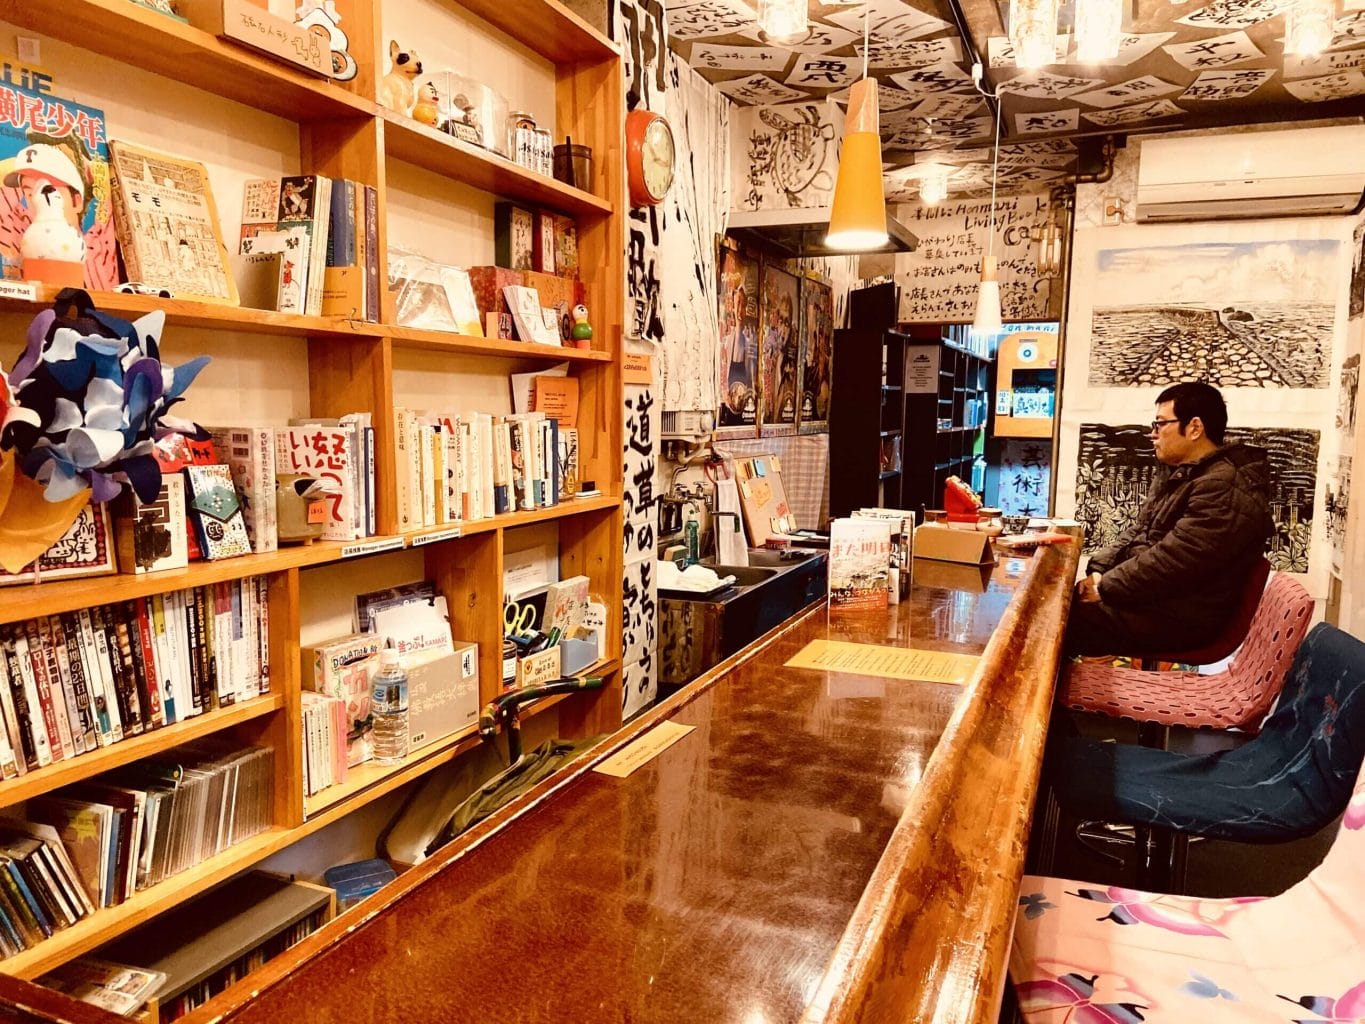 釜ヶ崎のココルームに、本を来店者にあげる日替わり店長制のカフェ「本間にブックカフェ」オープン